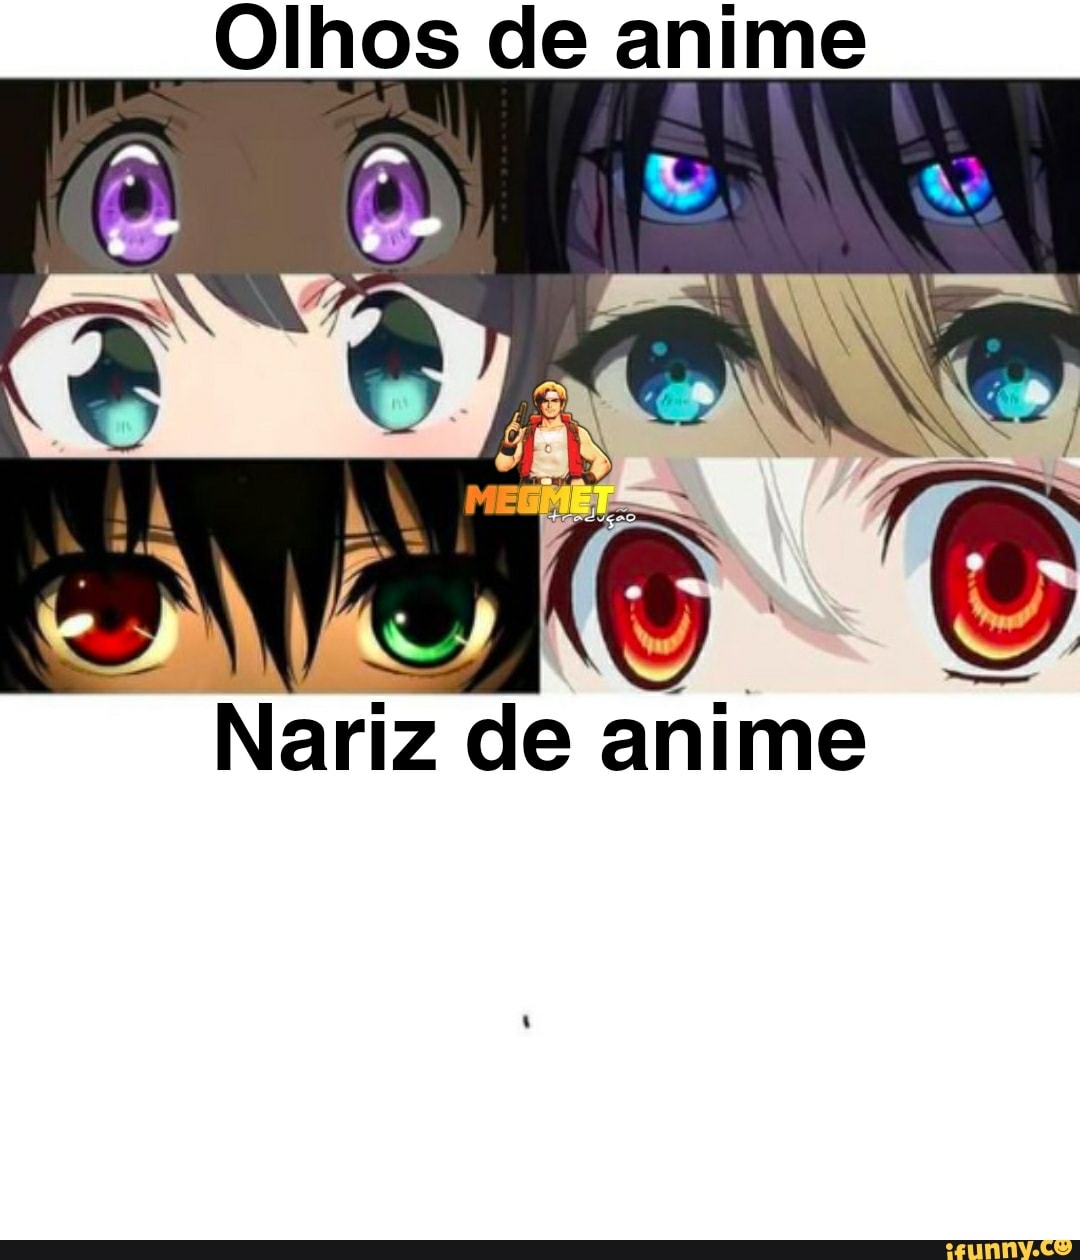 Olhos de anime nÃo Nariz de anime - iFunny Brazil